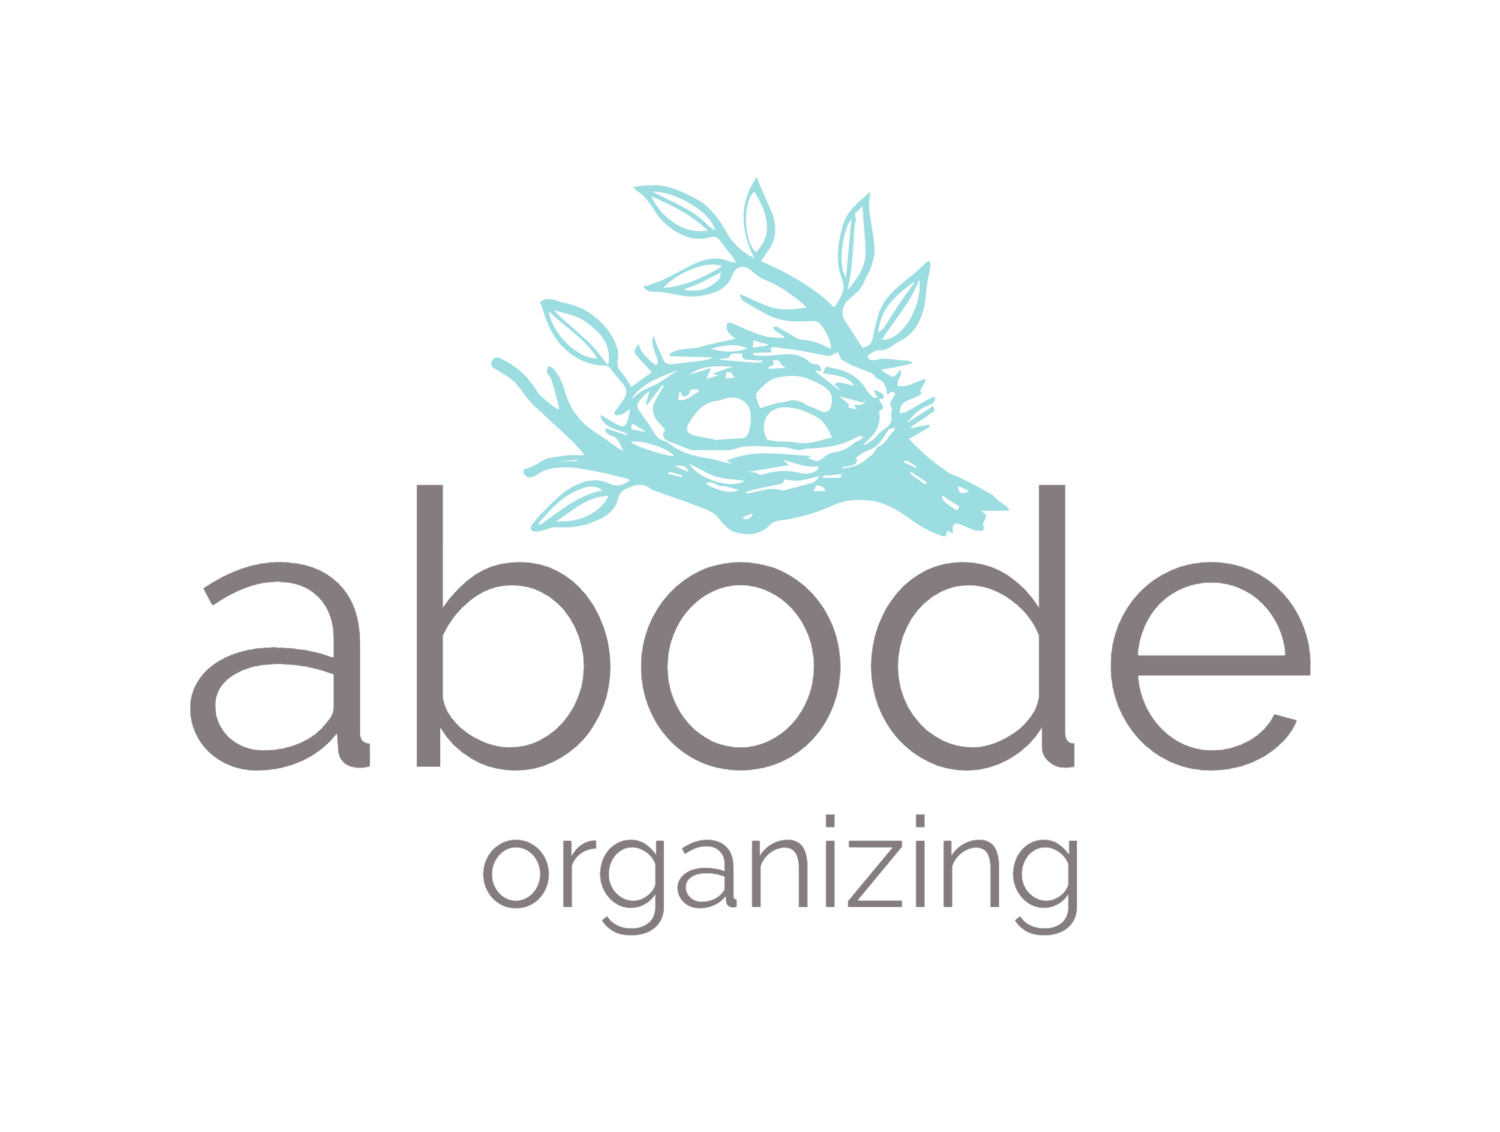 abode organizing